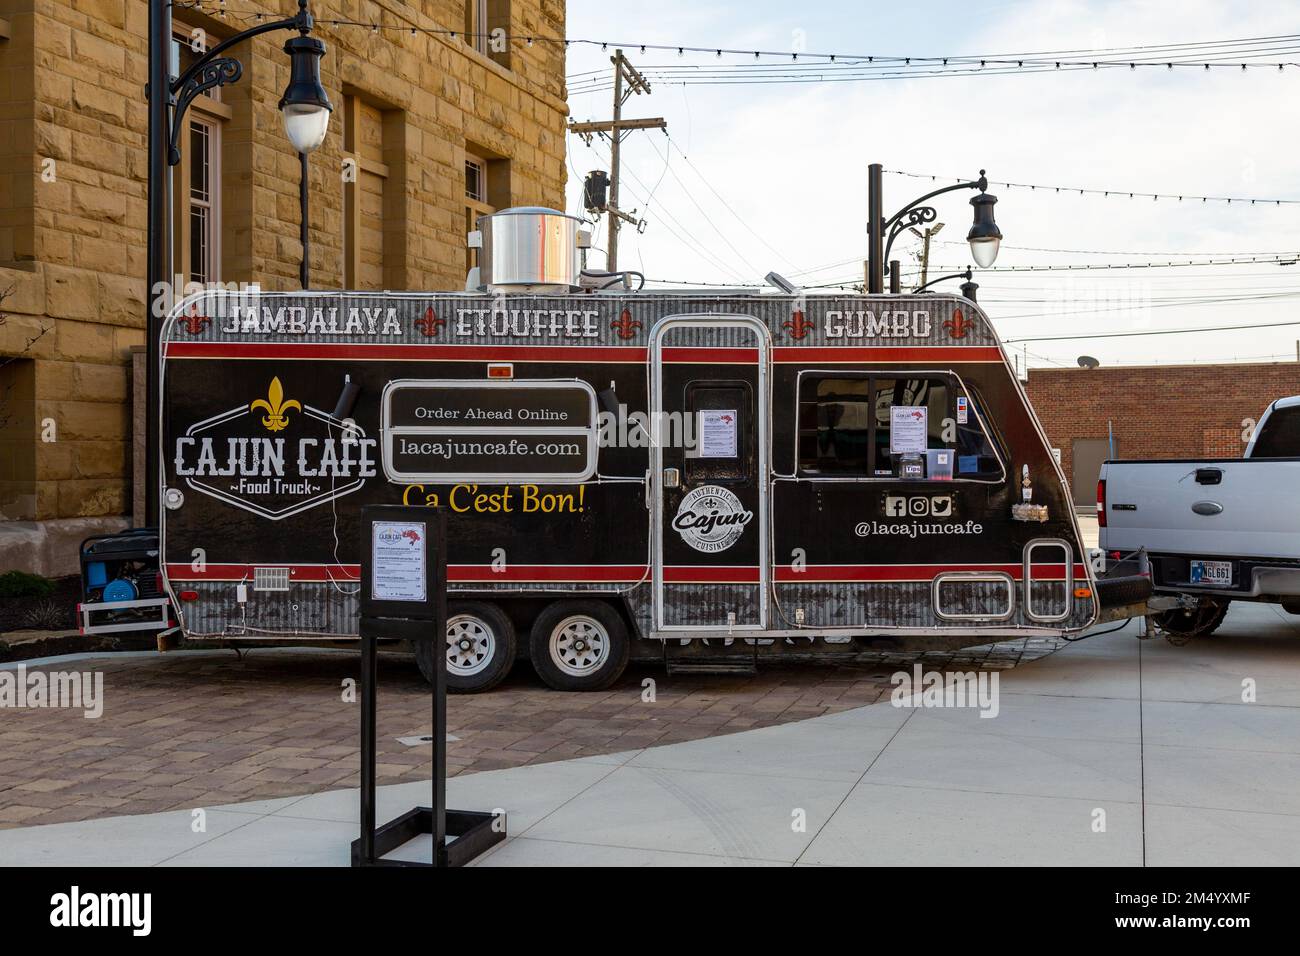 La remorque de cuisine Cajun café est mise en place à Bluffton, Indiana, États-Unis. Banque D'Images